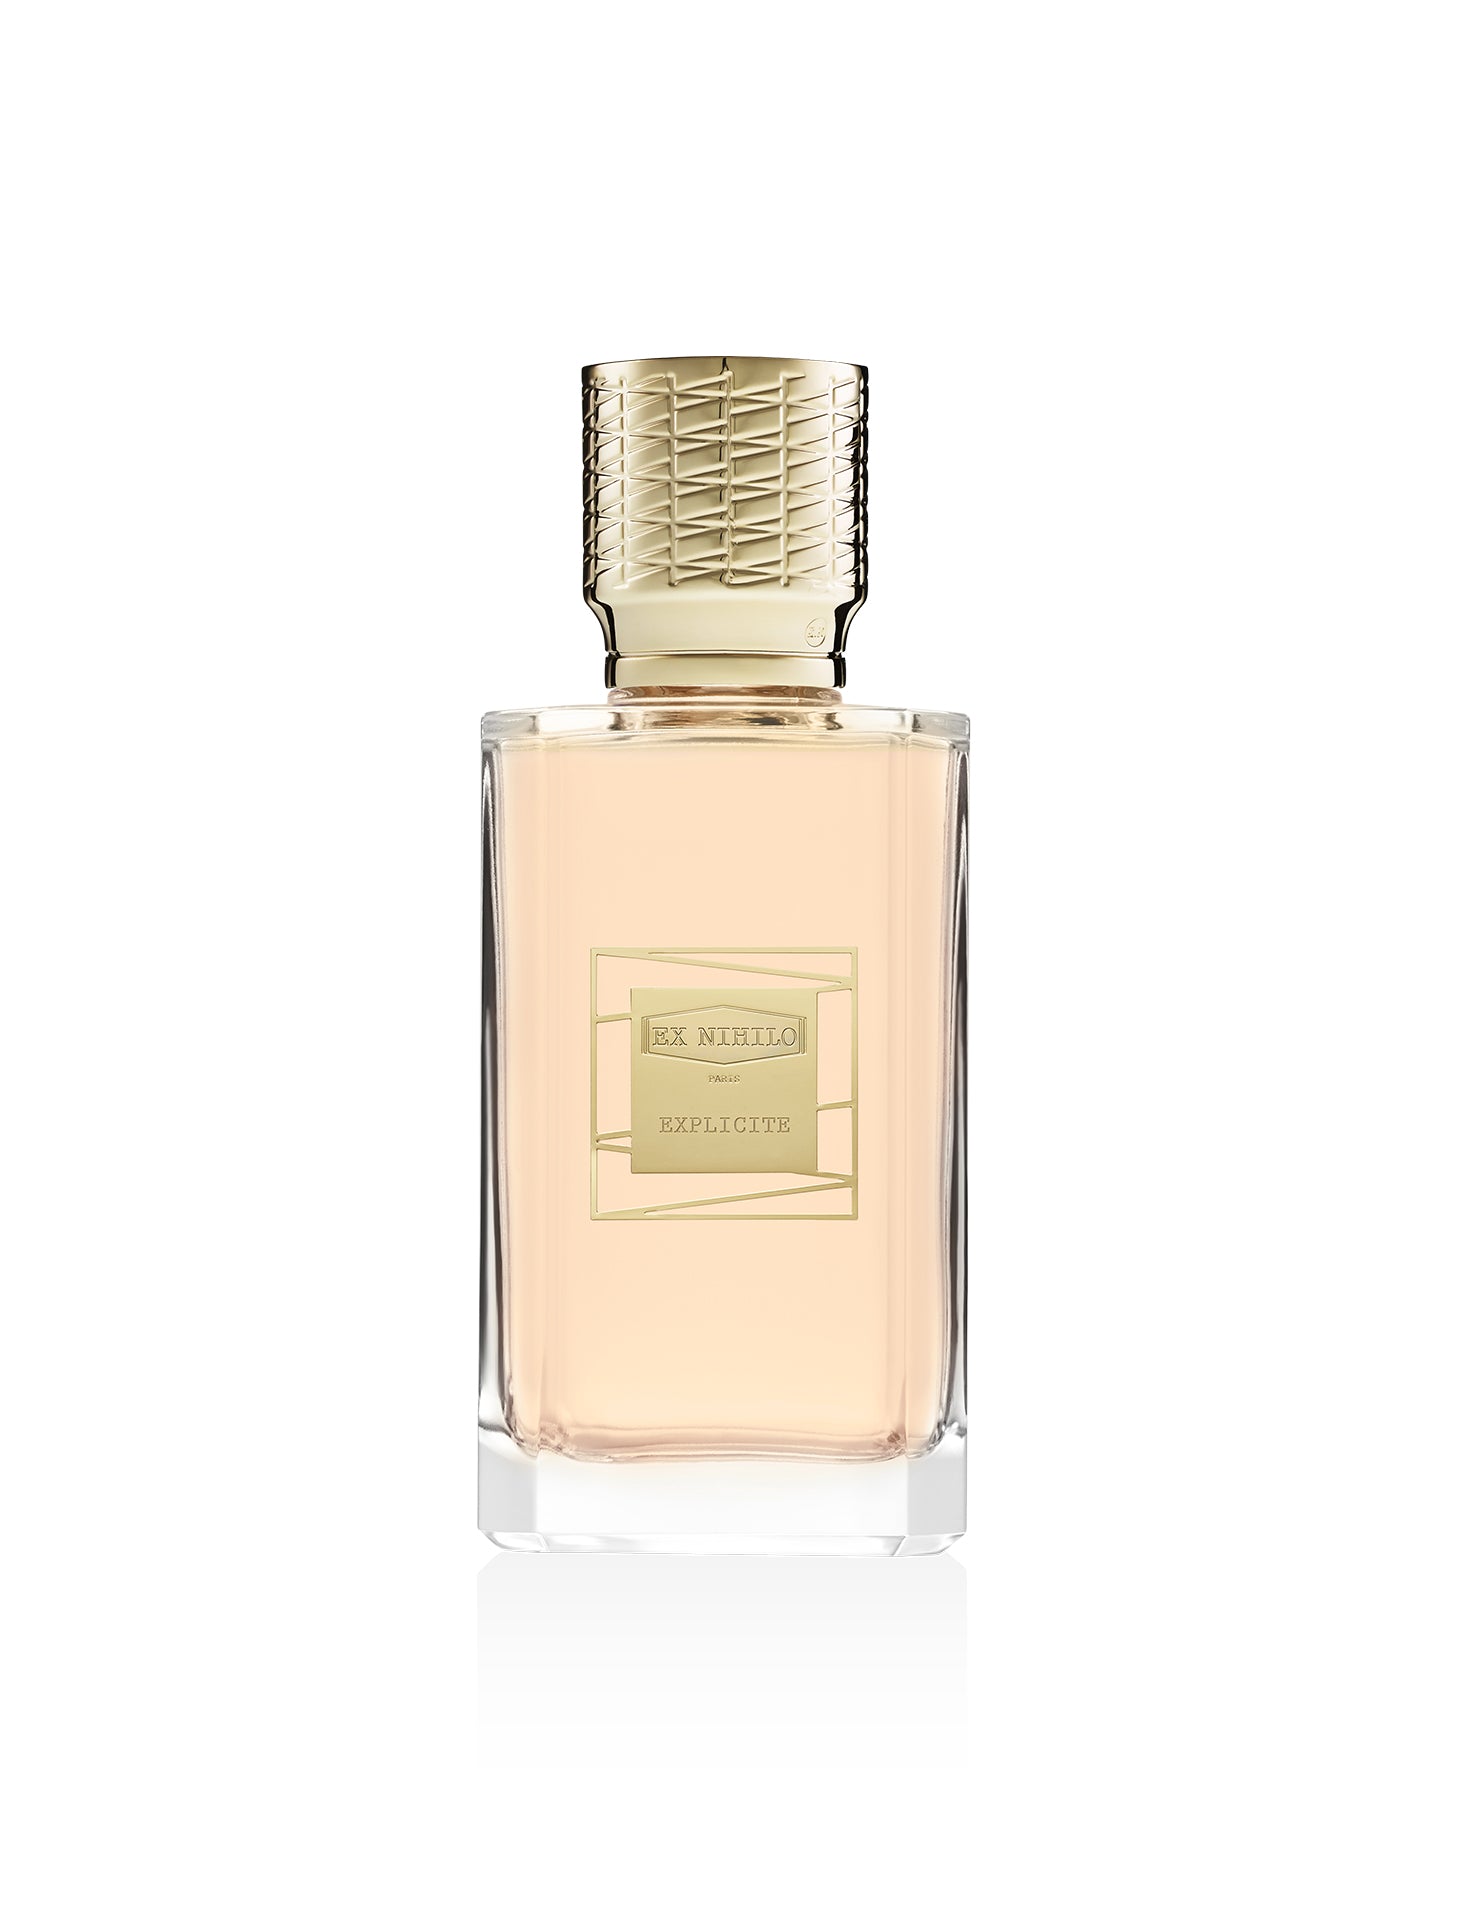 Louis Vuitton Perfume Price Indianapolis